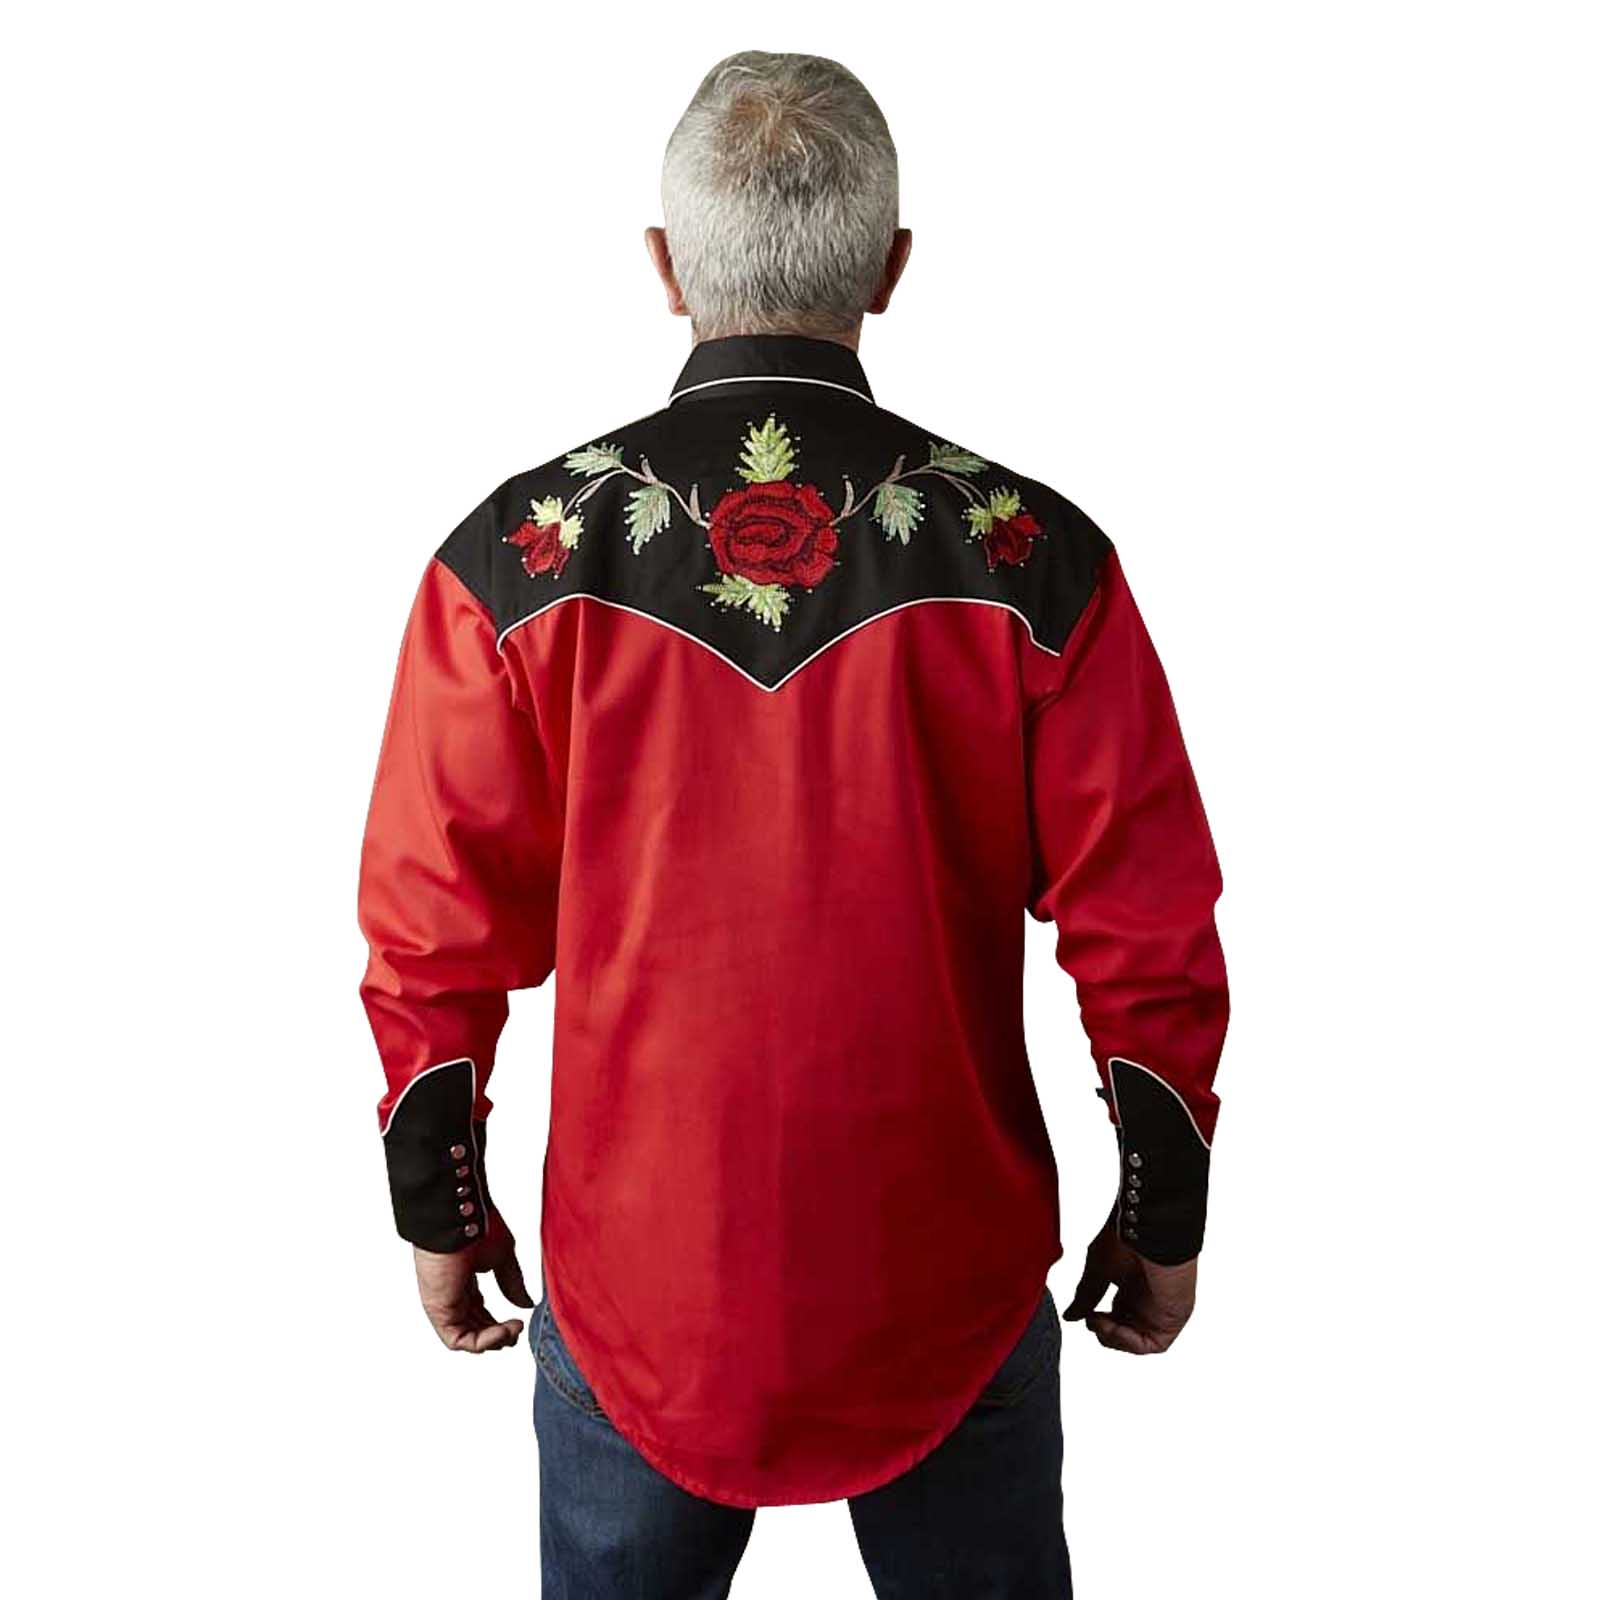 Vintage Inspired Western Shirt Men's Rockmount Nashville Rose Red Back S-2XL